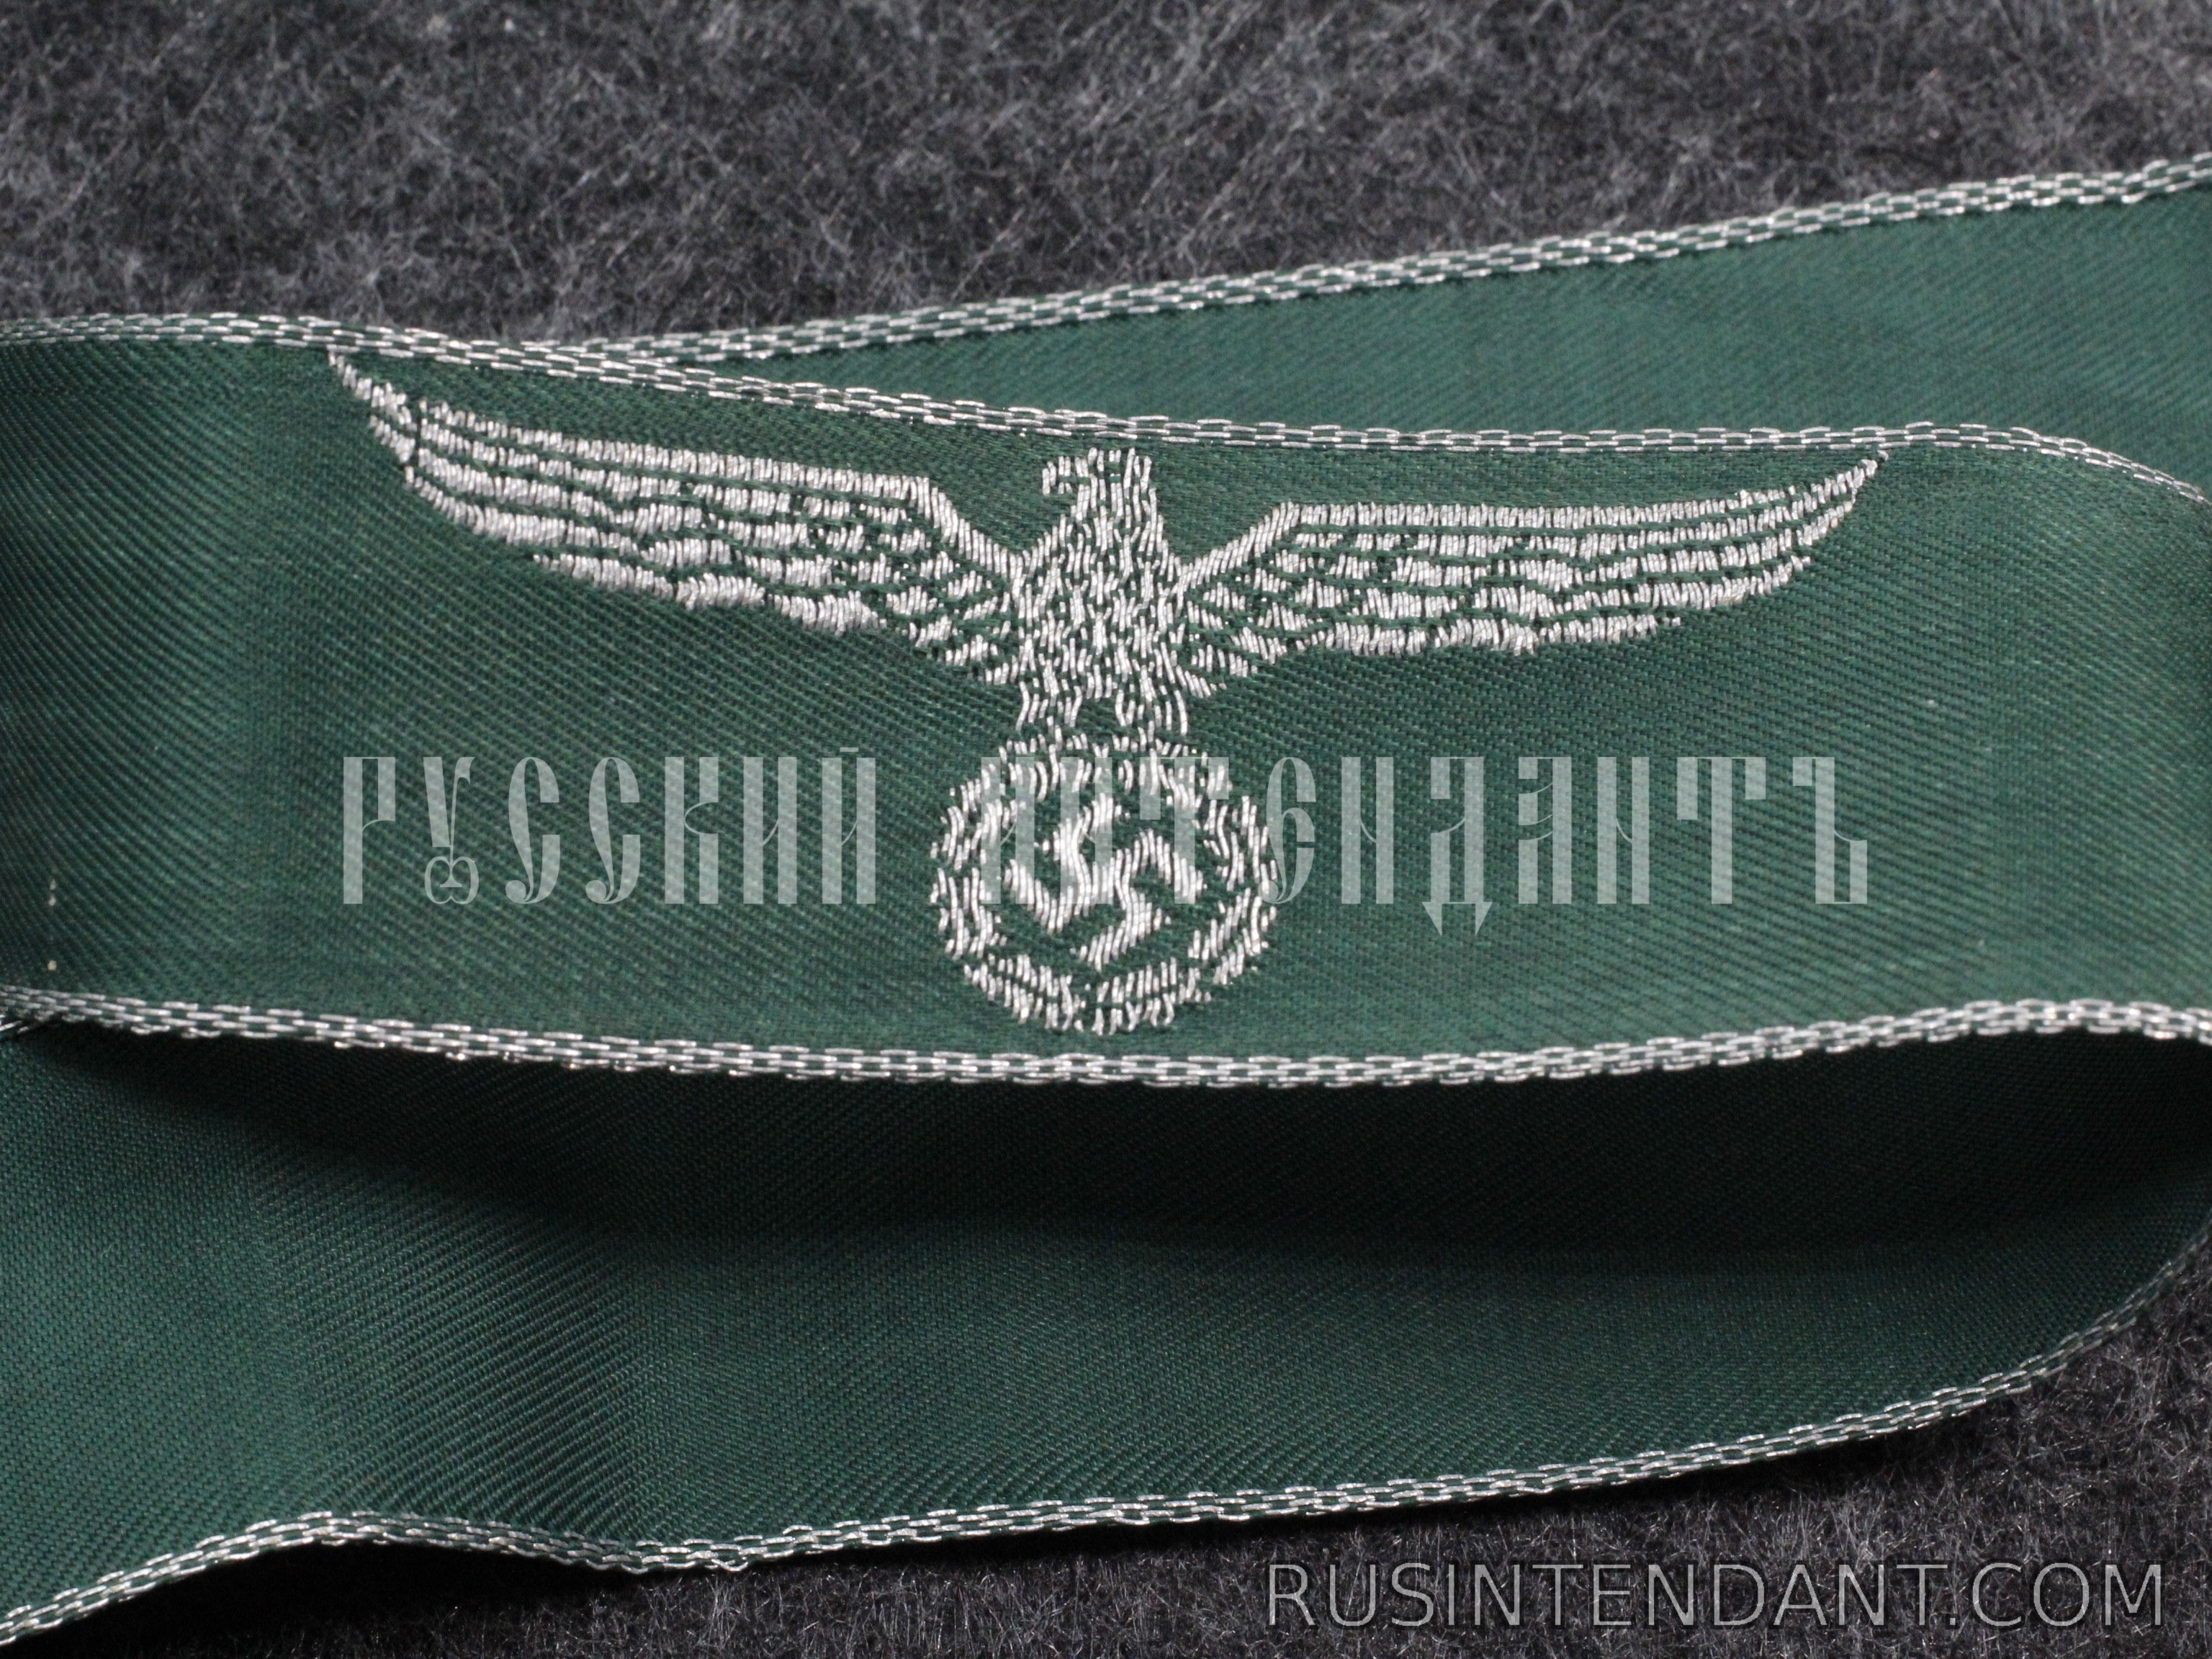 флаг таможенной службы россии фото